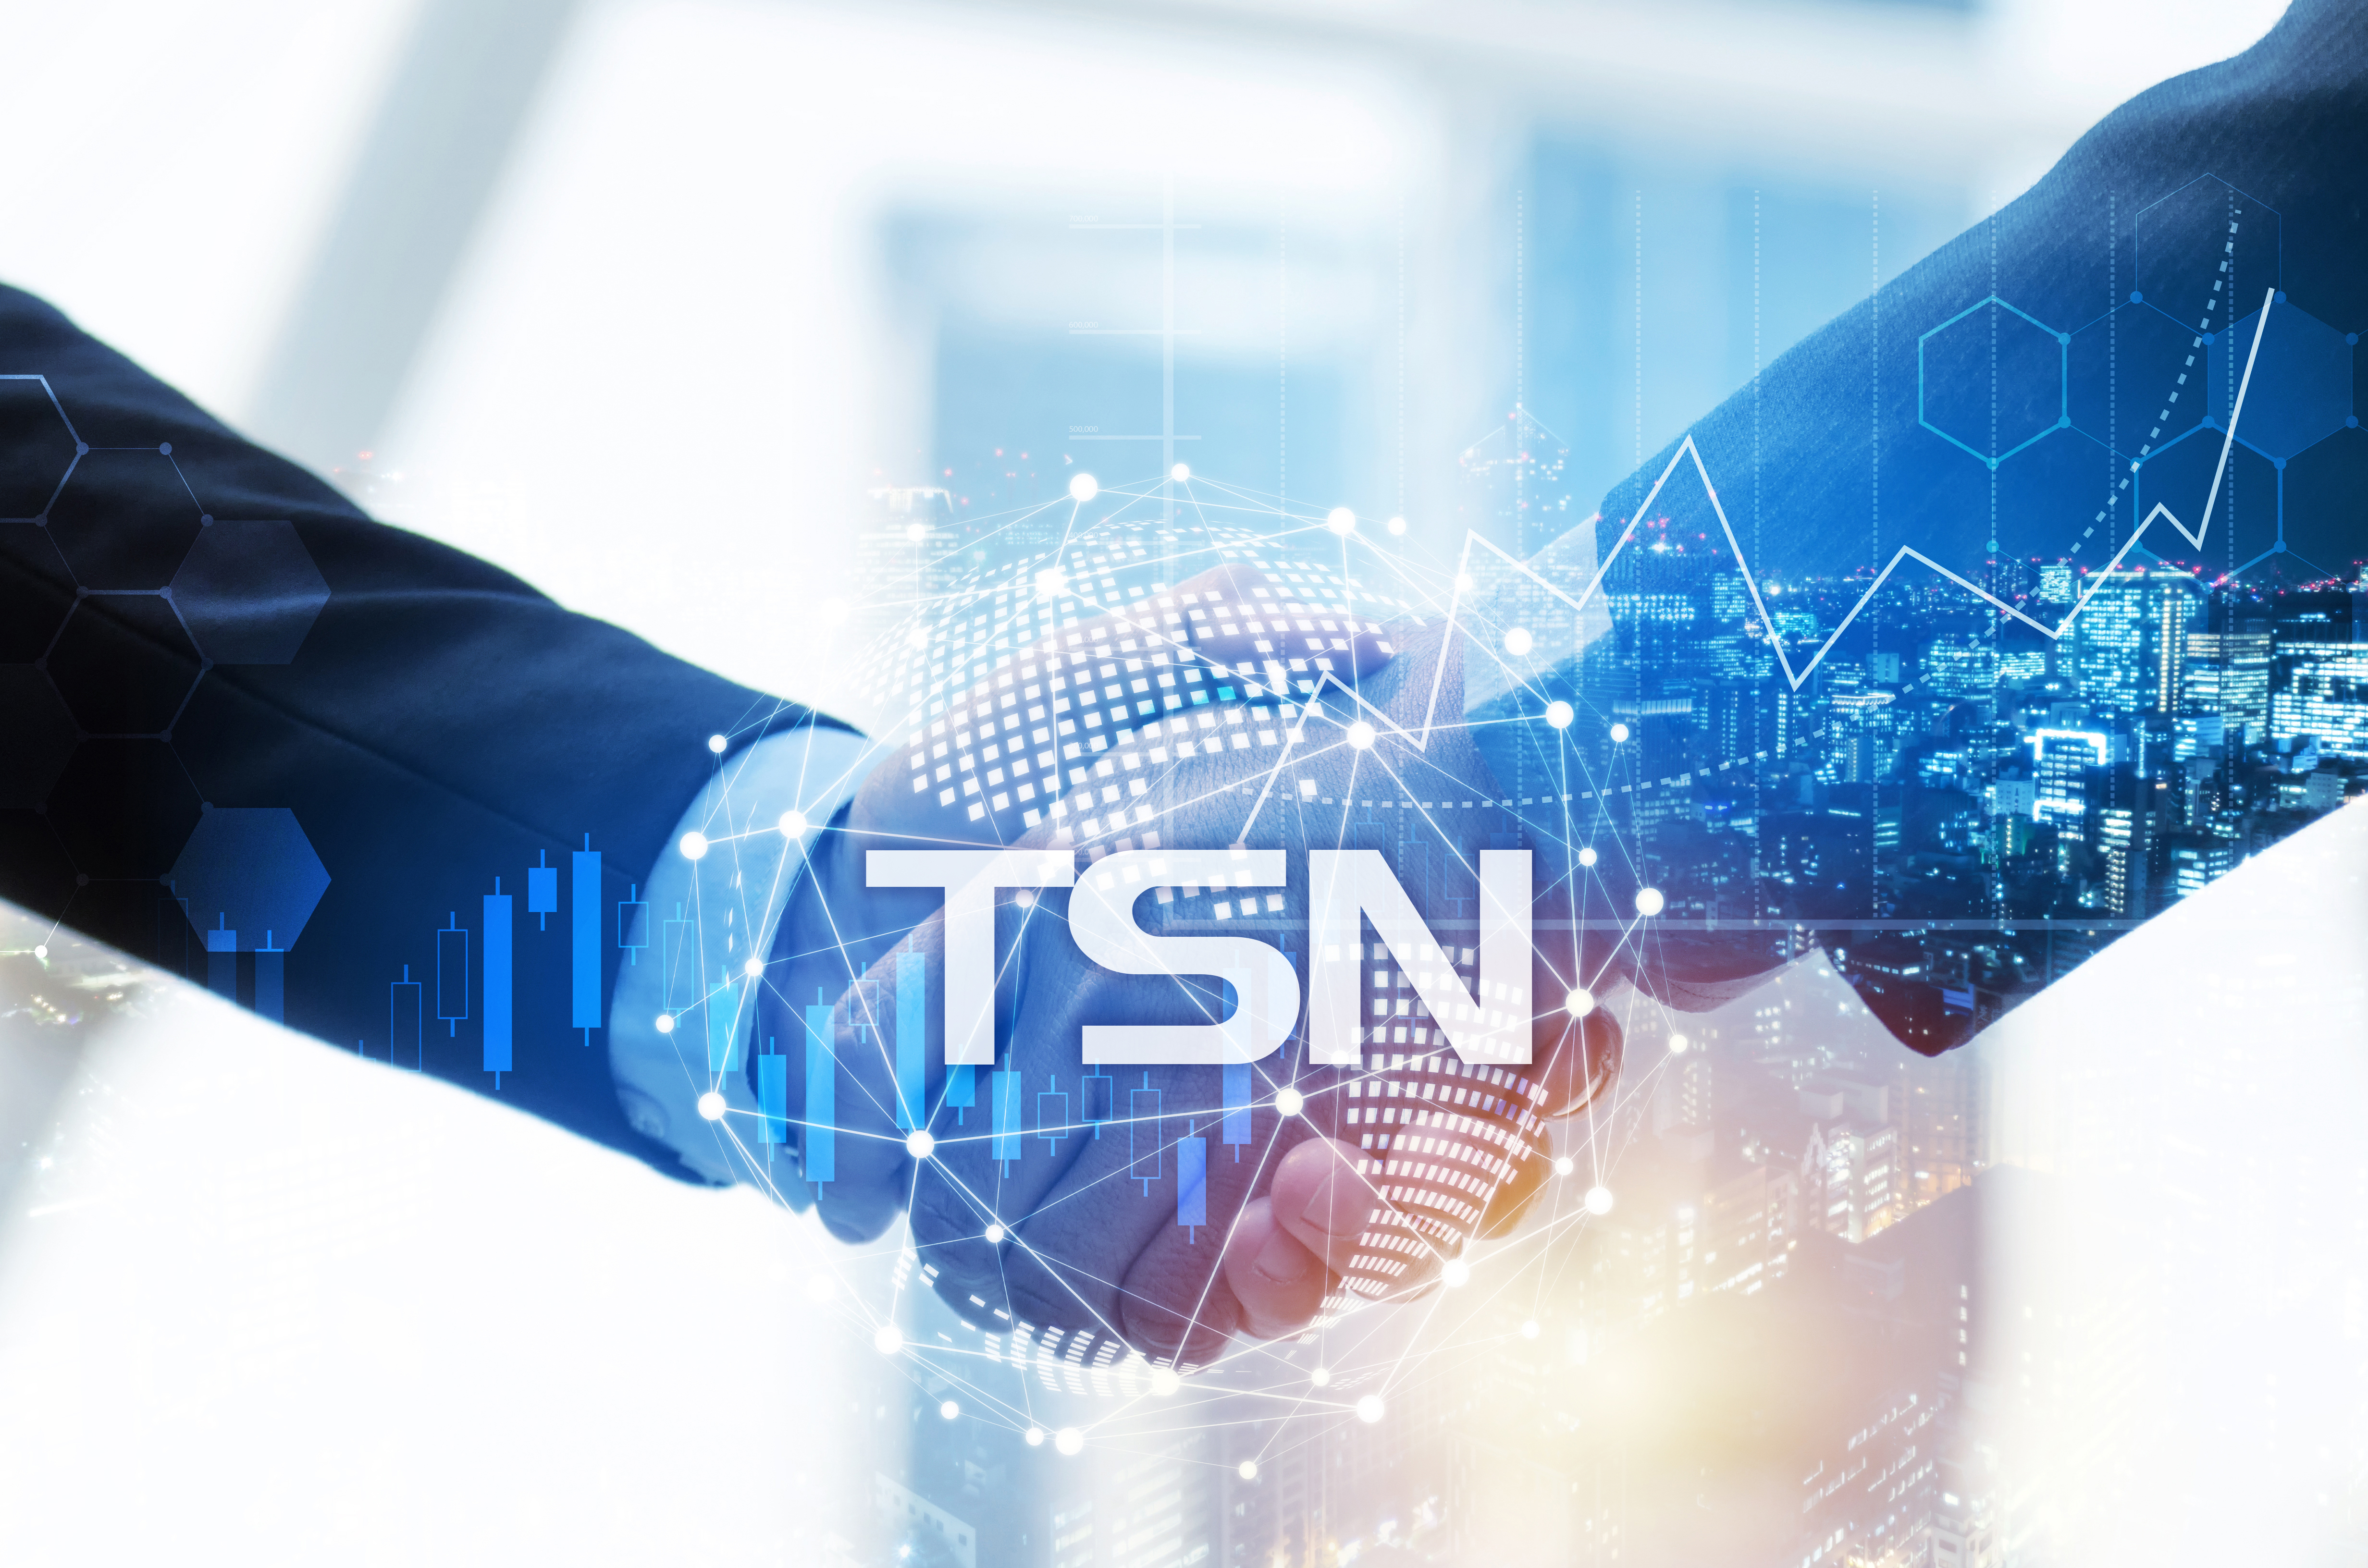 Con una demanda cada vez mayor de tecnología de conexión en red sensible al tiempo, el número de proveedores de automatización industrial que suministran dispositivos compatibles con TSN sigue creciendo.